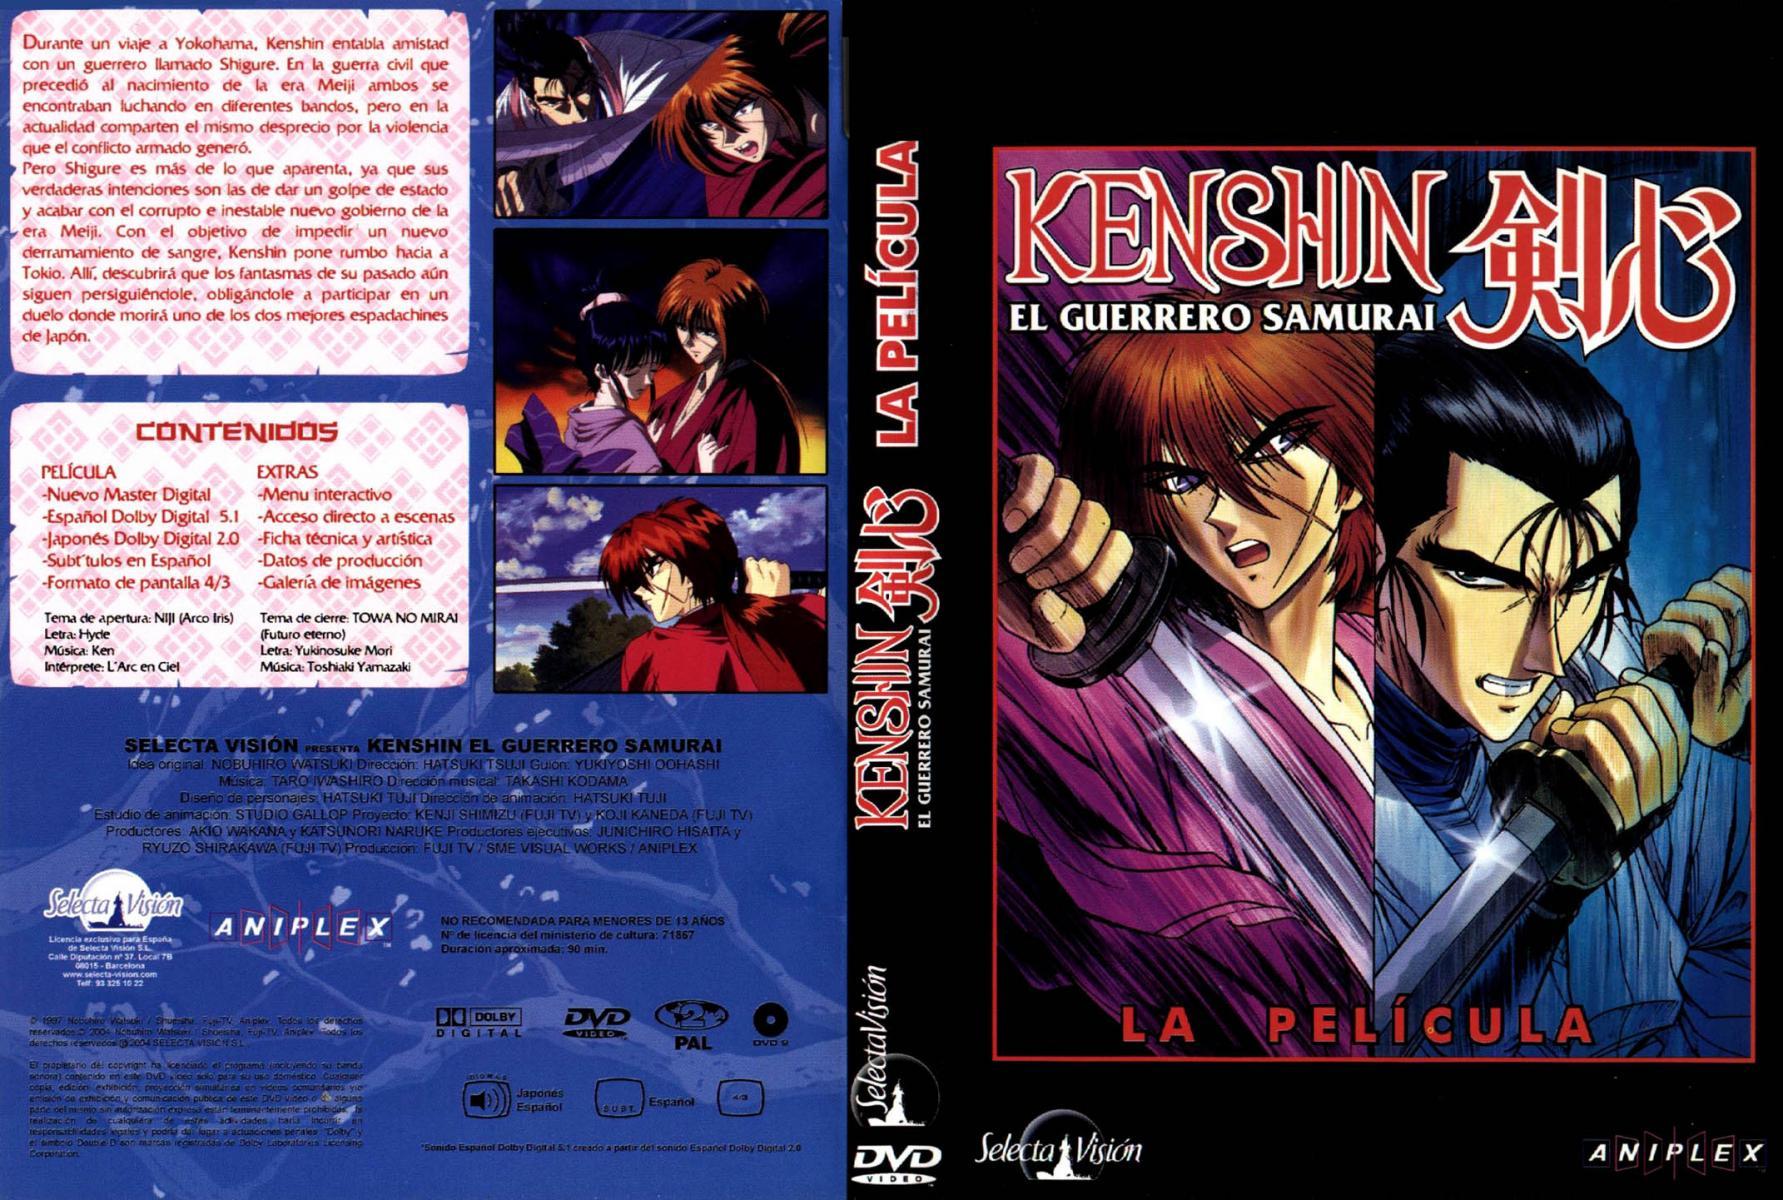 Rurouni Kenshin: Requiem for the Ishin Patriots (1997) - IMDb